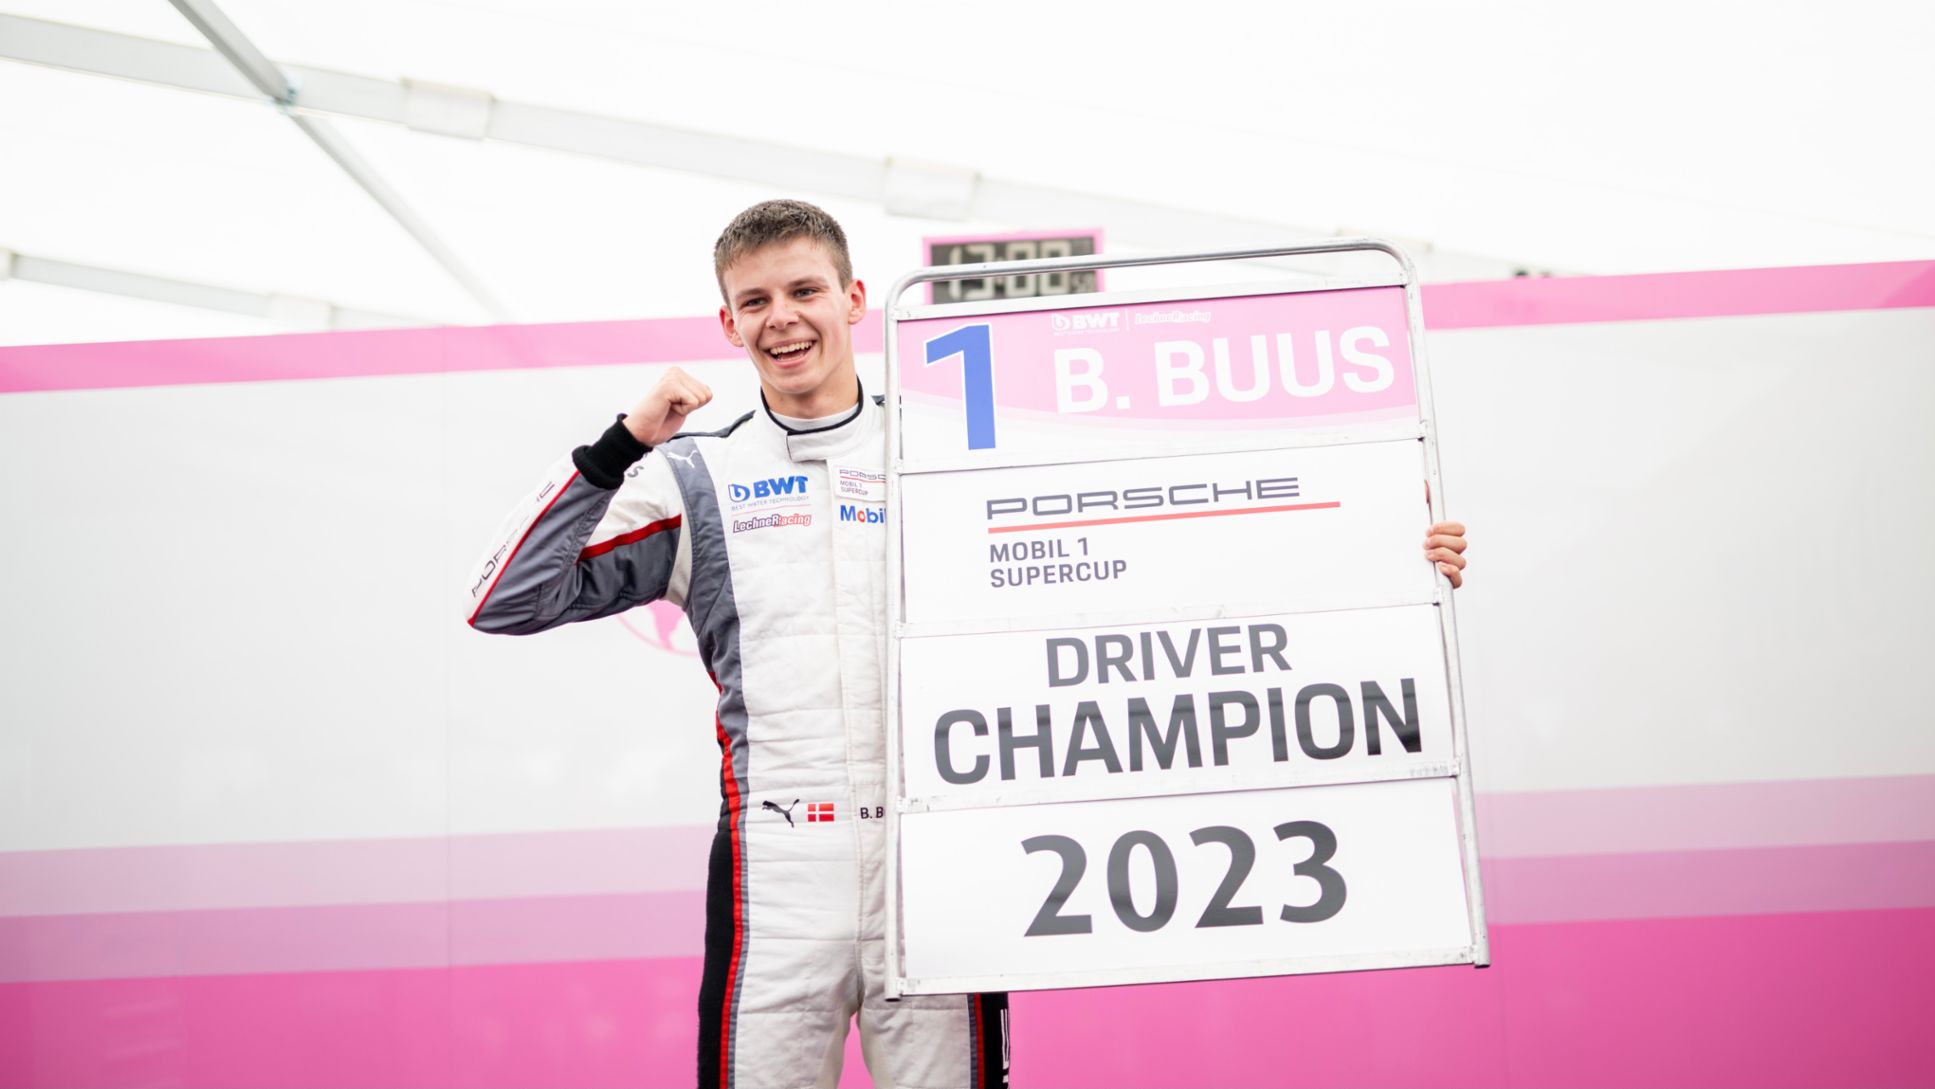 Porsche-Junior Bastian Buus (DK), BWT Lechner Racing (#1), Porsche Mobil 1 Supercup 2023, Monza (I), 2023, Porsche AG